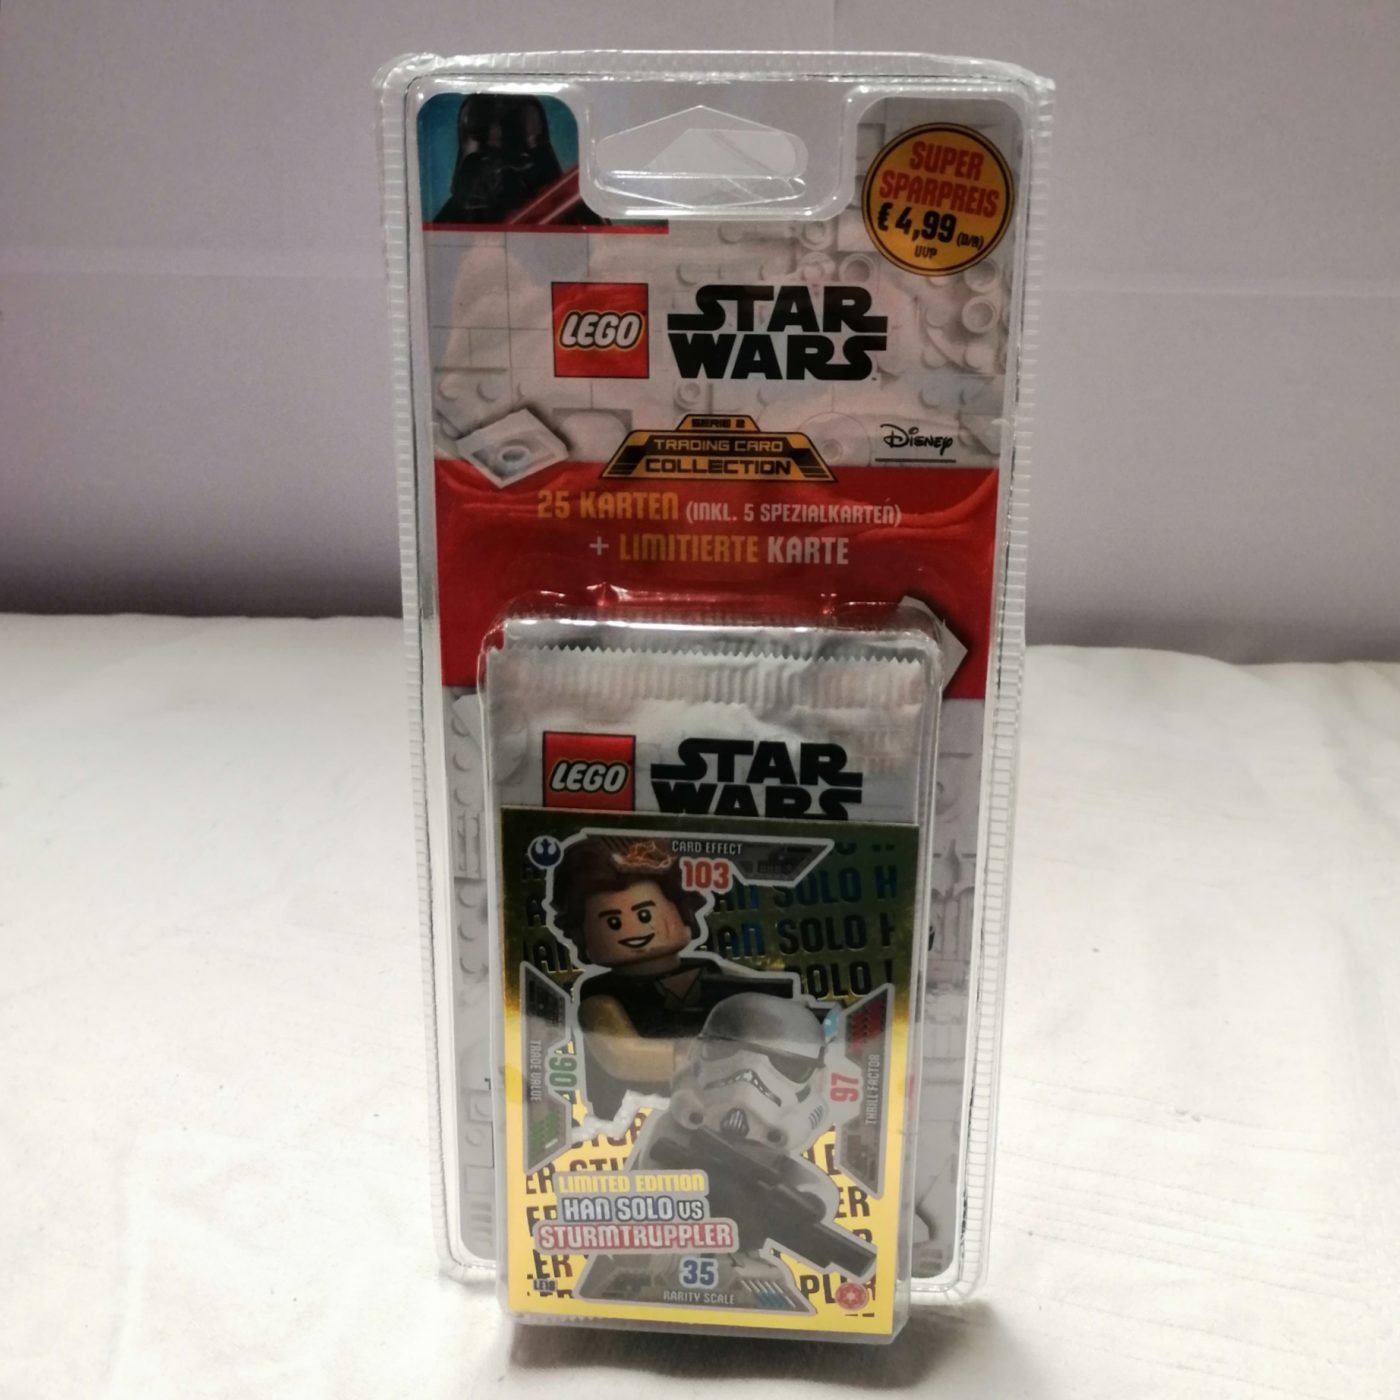 Lego Star Wars TCG Serie 2 Blister "Han Solo vs Sturmtruppler" vorne